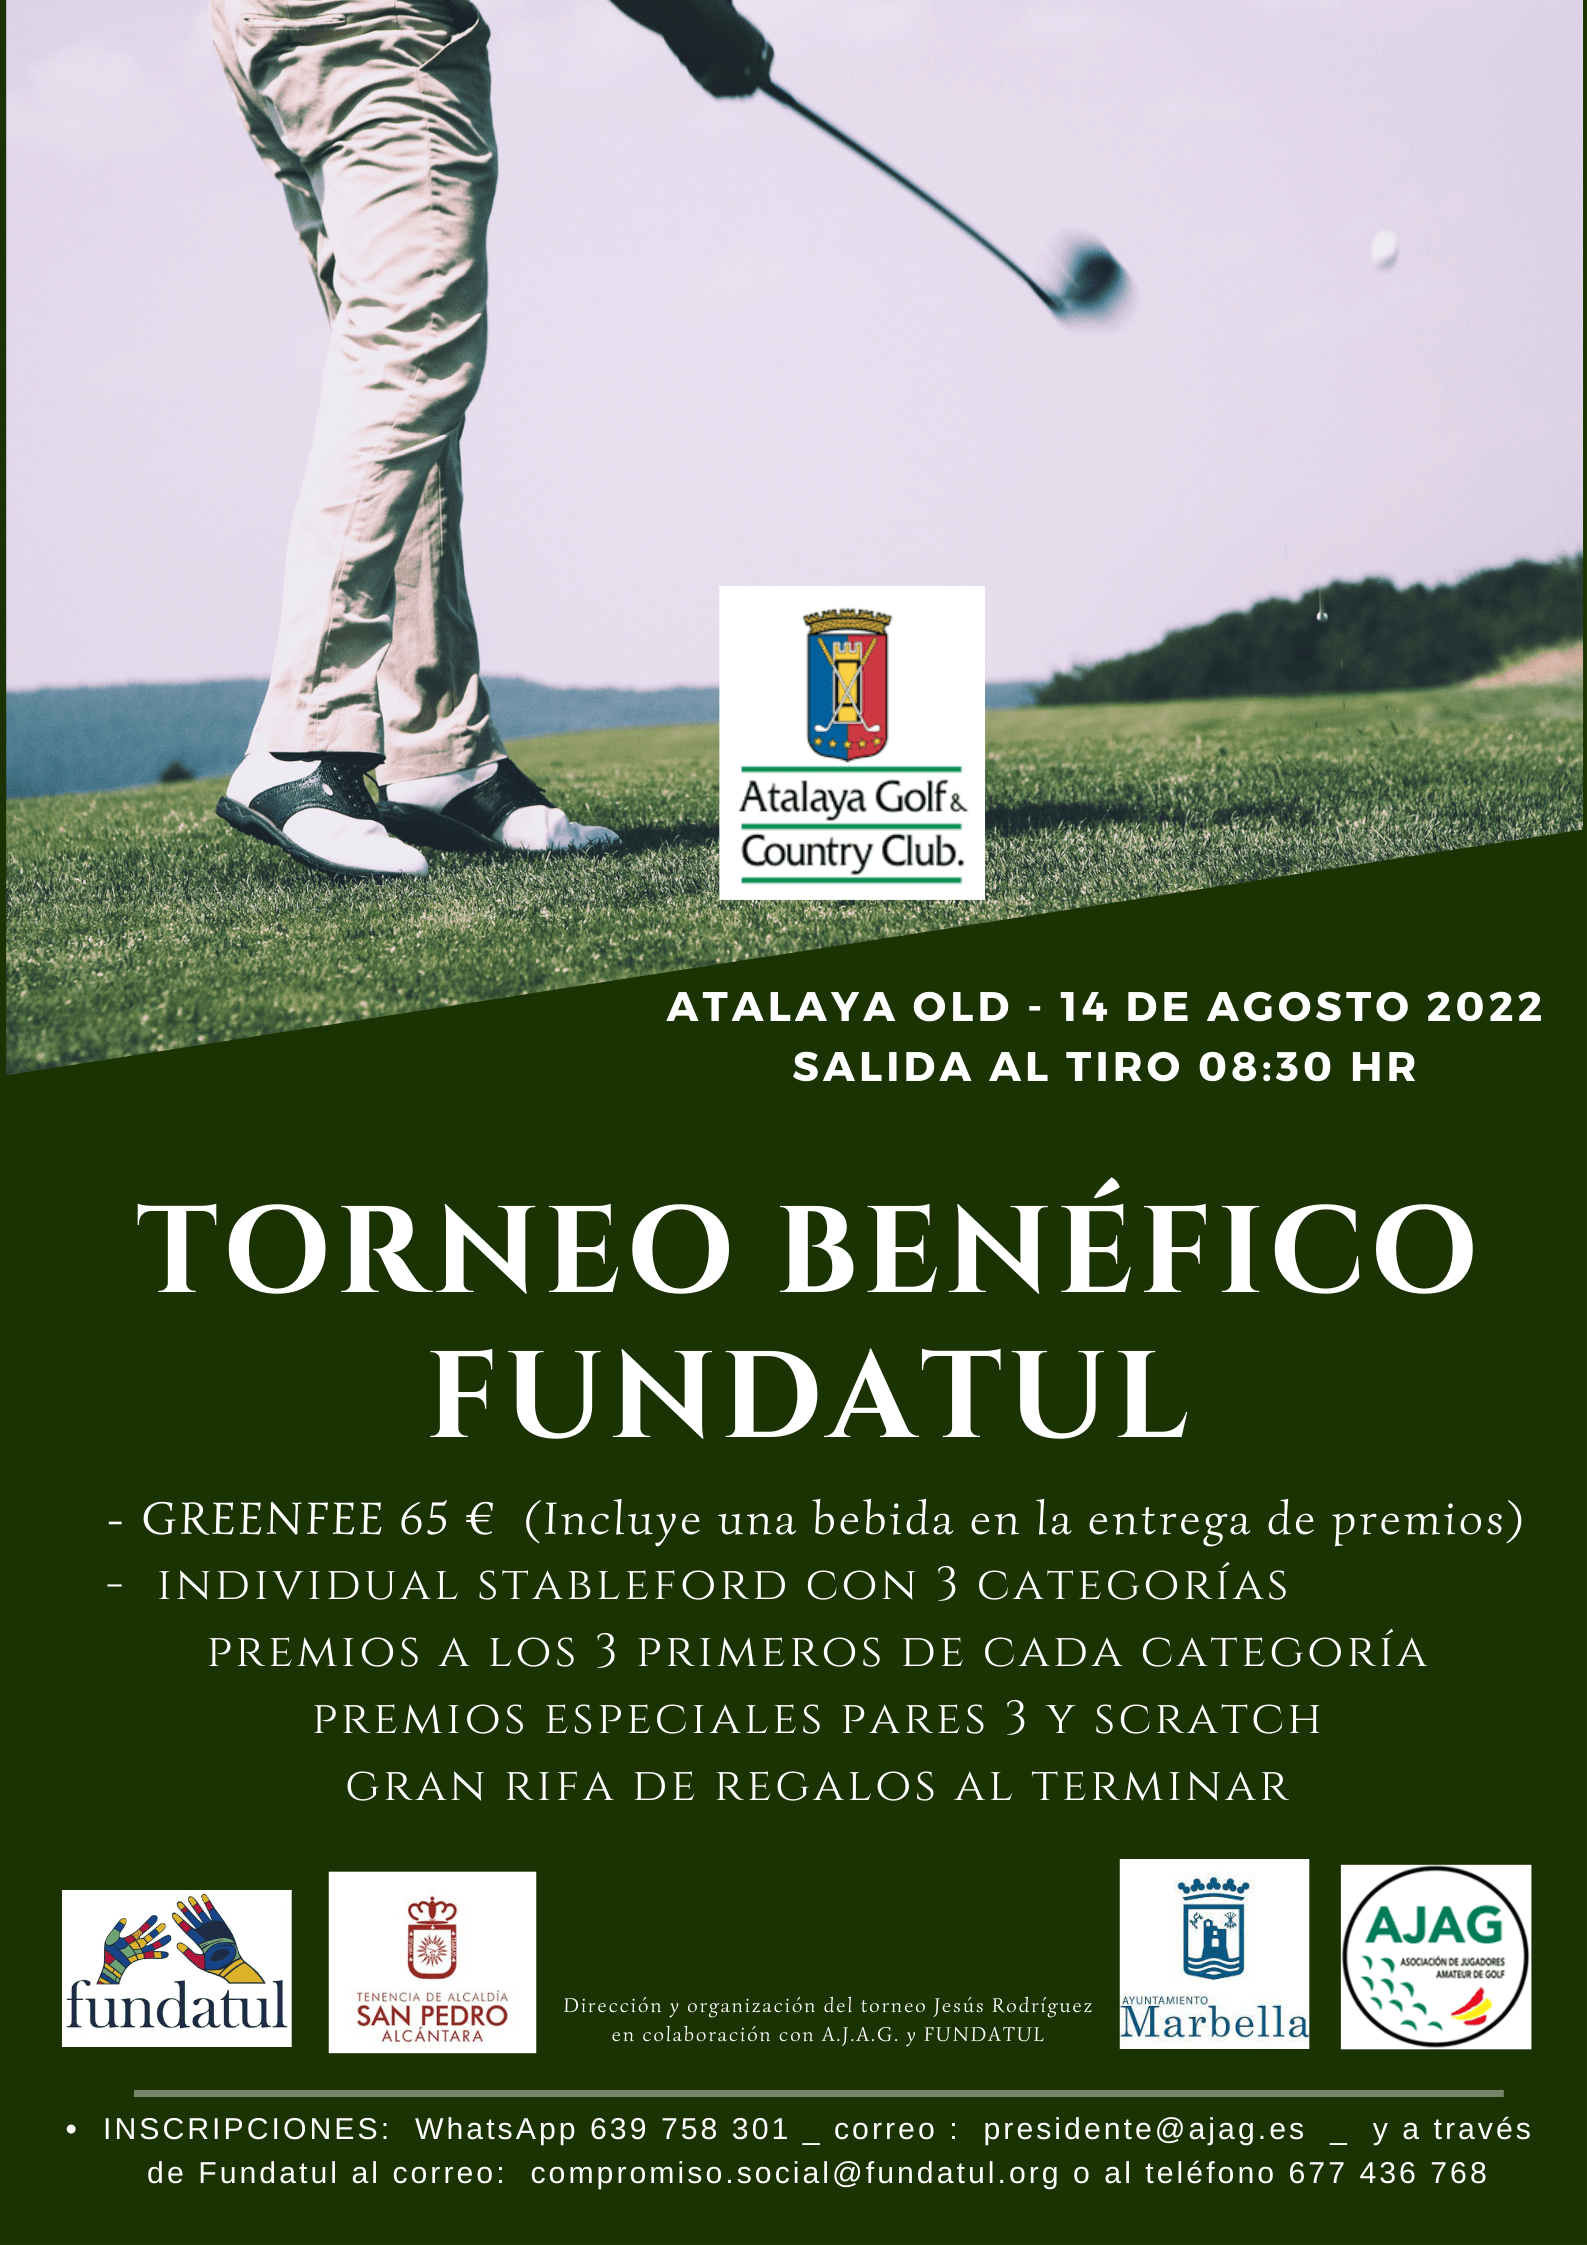 El torneo benéfico de golf a favor de Fundatul se celebrará el domingo 14 de agosto